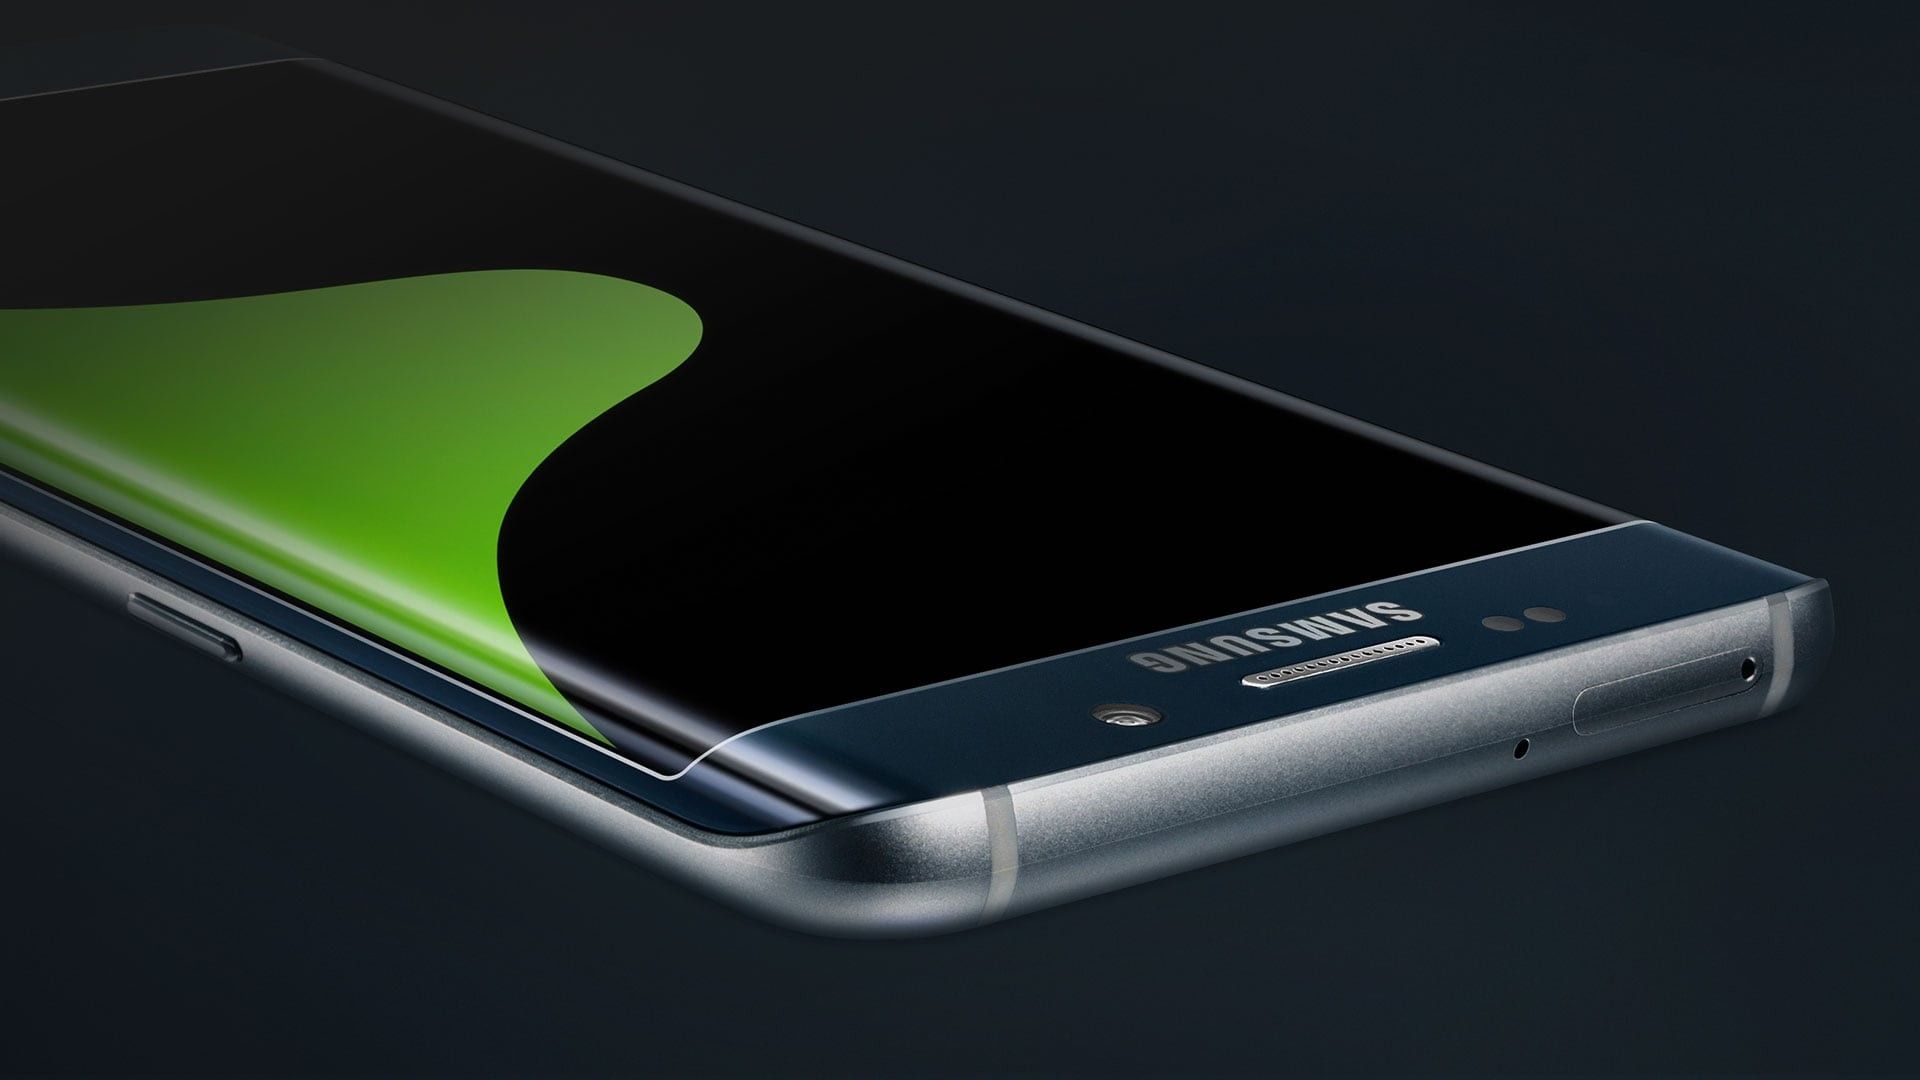 Samsung S6 Edge Дисплей